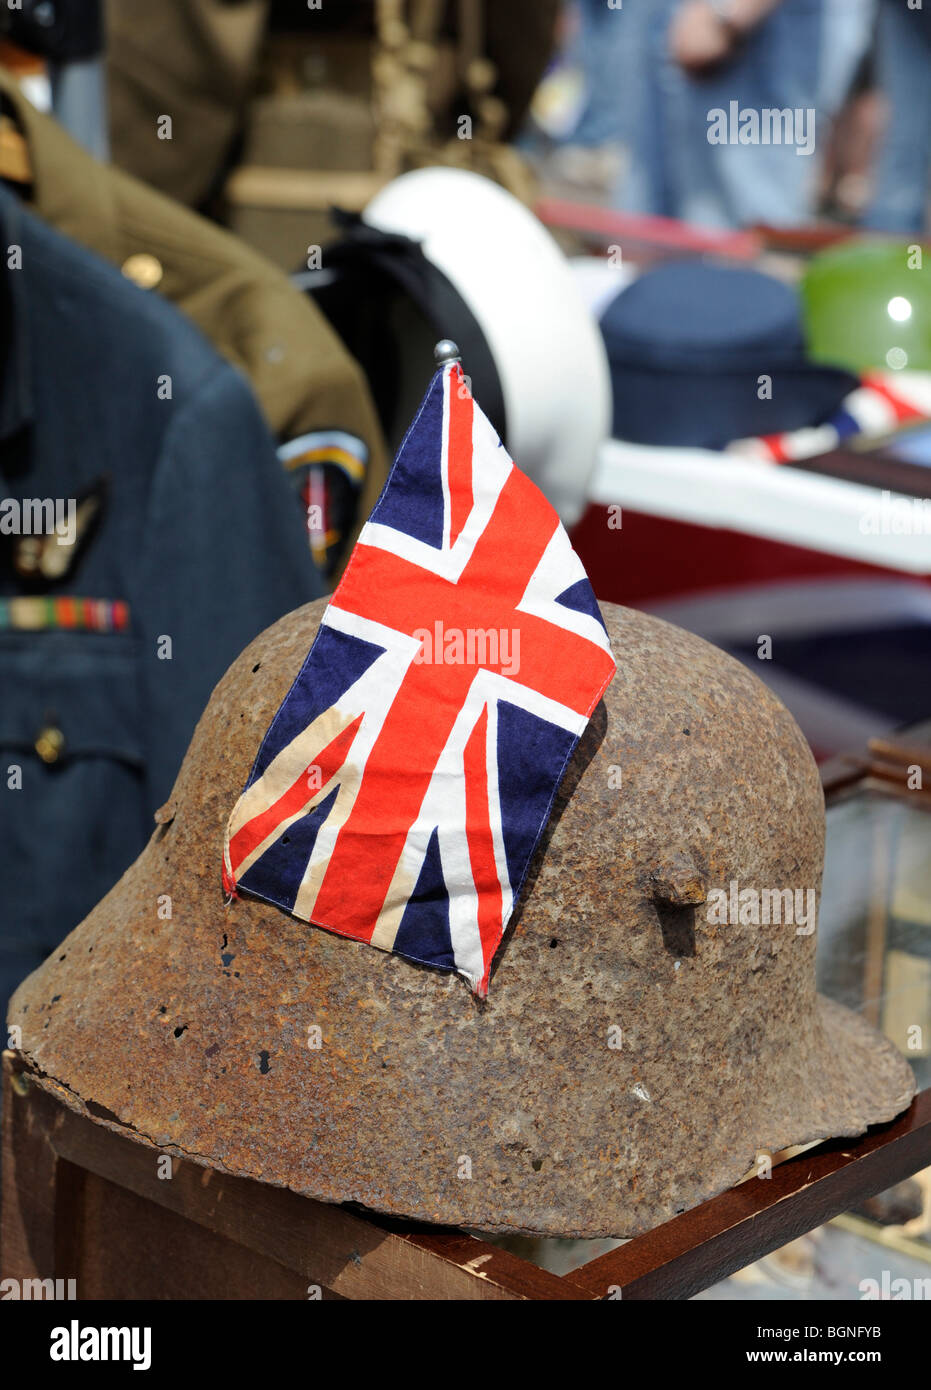 Korrodierter zweiten Weltkrieg deutsche Infanterie Helm hat einen Anschluß-Markierungsfahne am Fanartikel-Stand während Karneval hinein platziert. Stockfoto